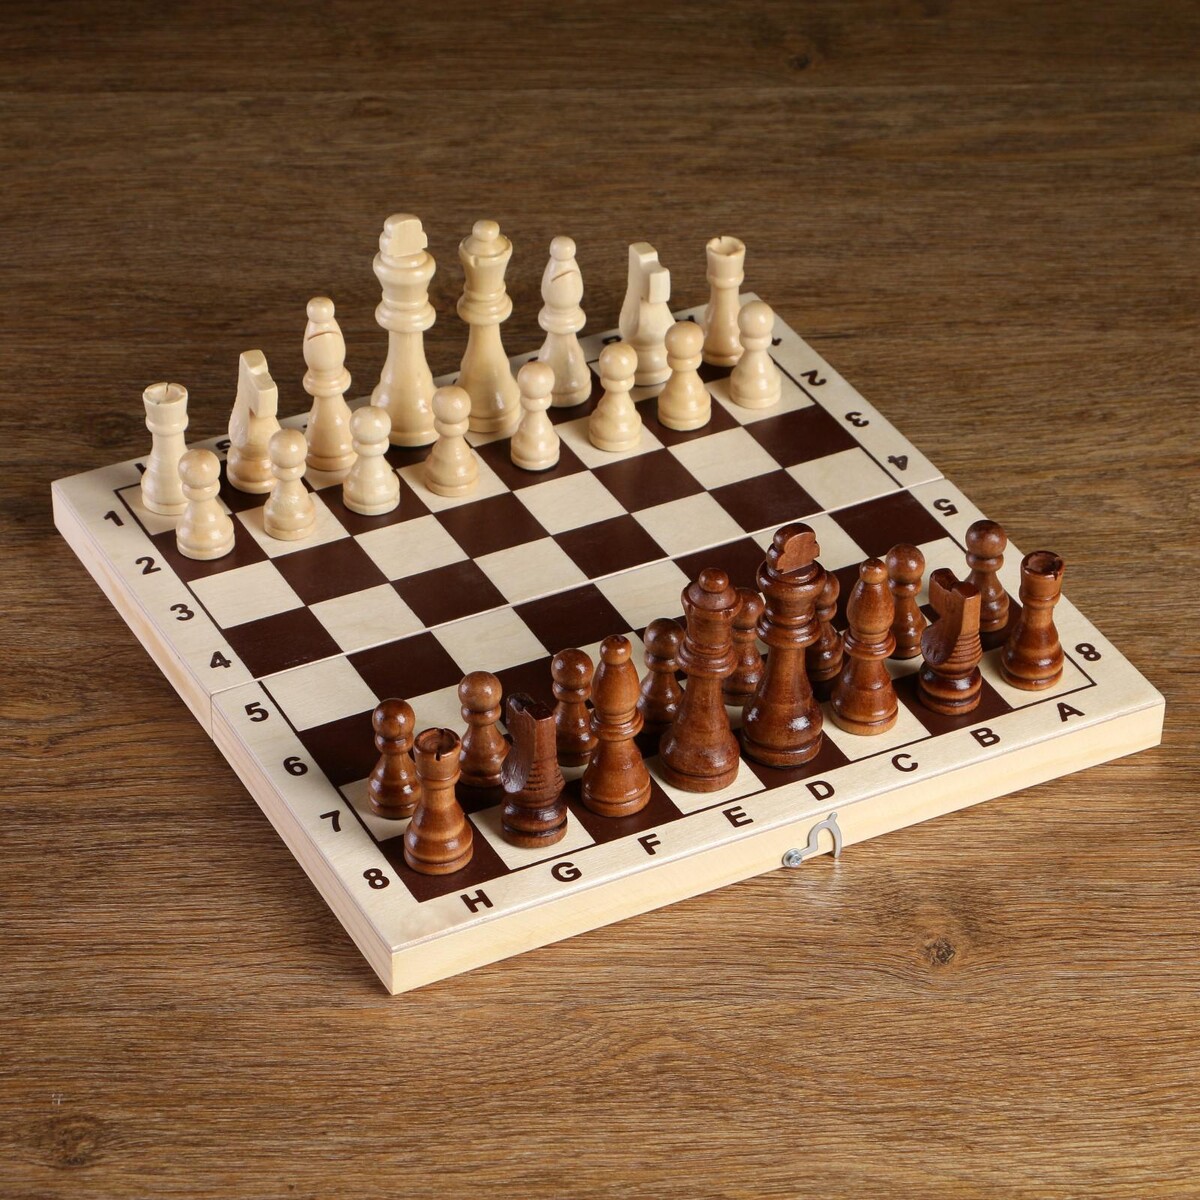 Шахматные фигуры, король h-8 см, пешка h-4 см король крыс